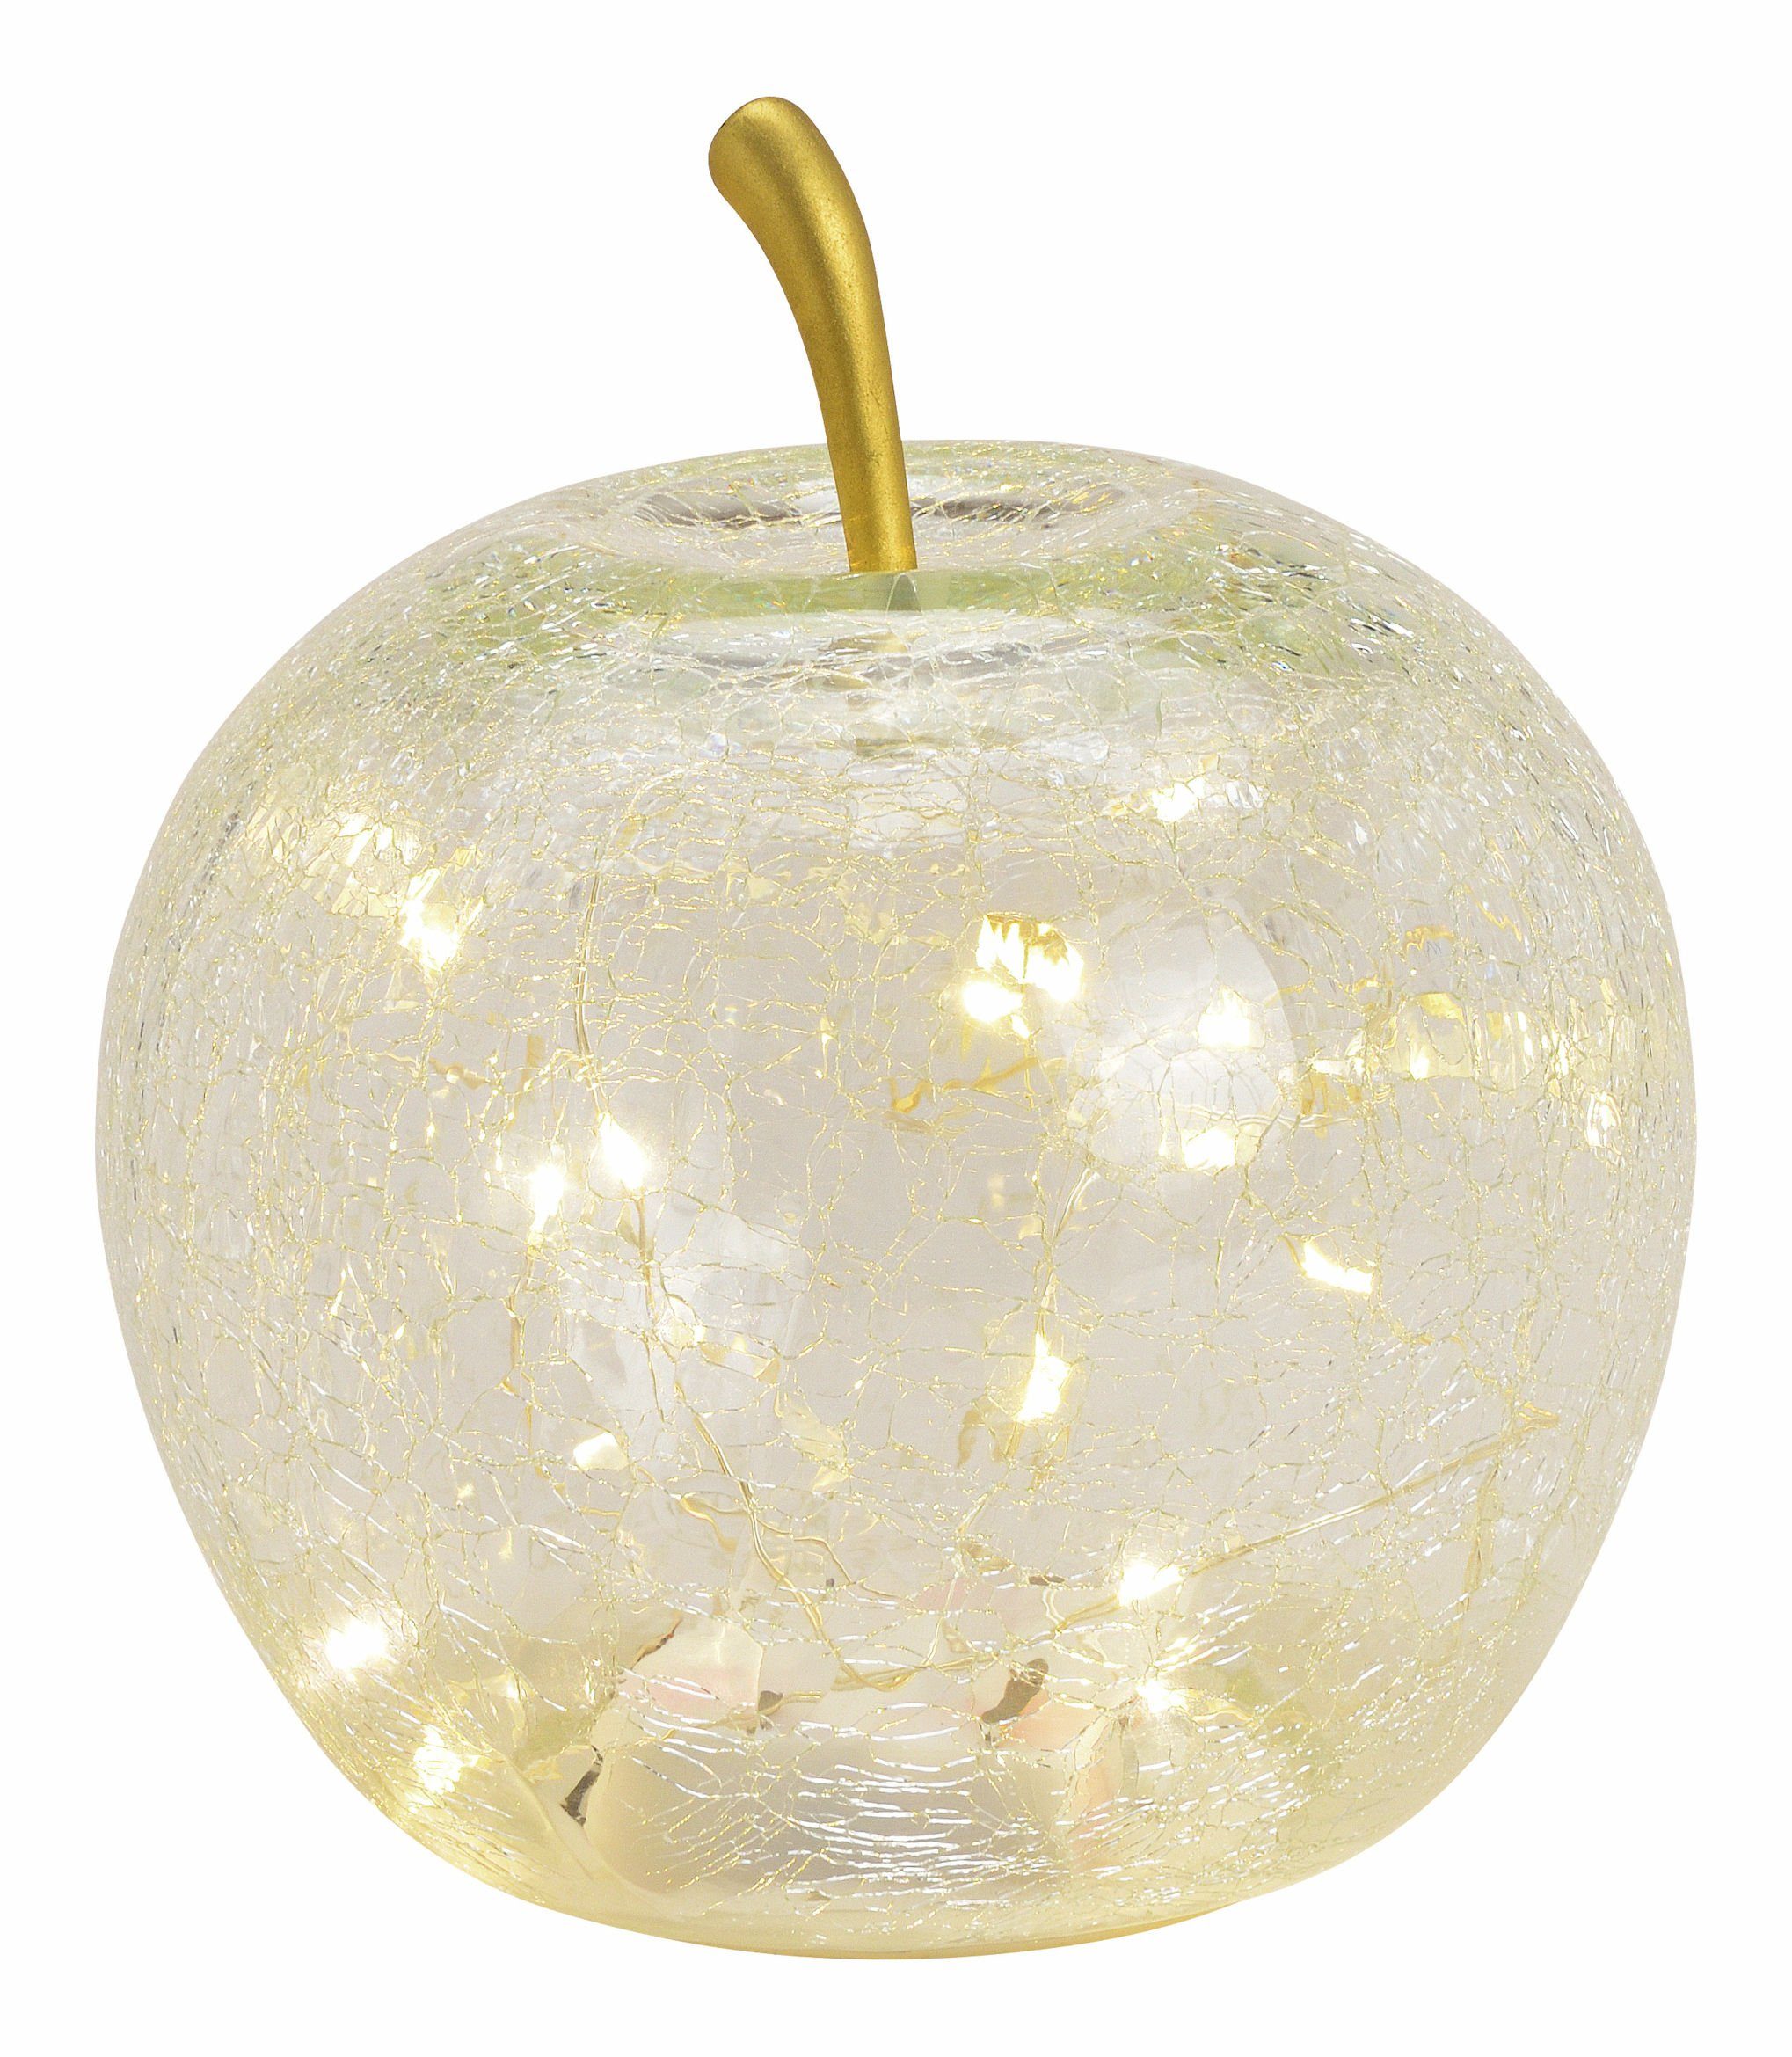 Spetebo LED Dekoobjekt LED Bruchglas Apfel 16 cm mit Timer - transparent, Ein-/Ausschalter, Timer, LED fest verbaut, warm weiß, Deko Frucht aus Crackle Glas beleuchtet Batterie betrieben